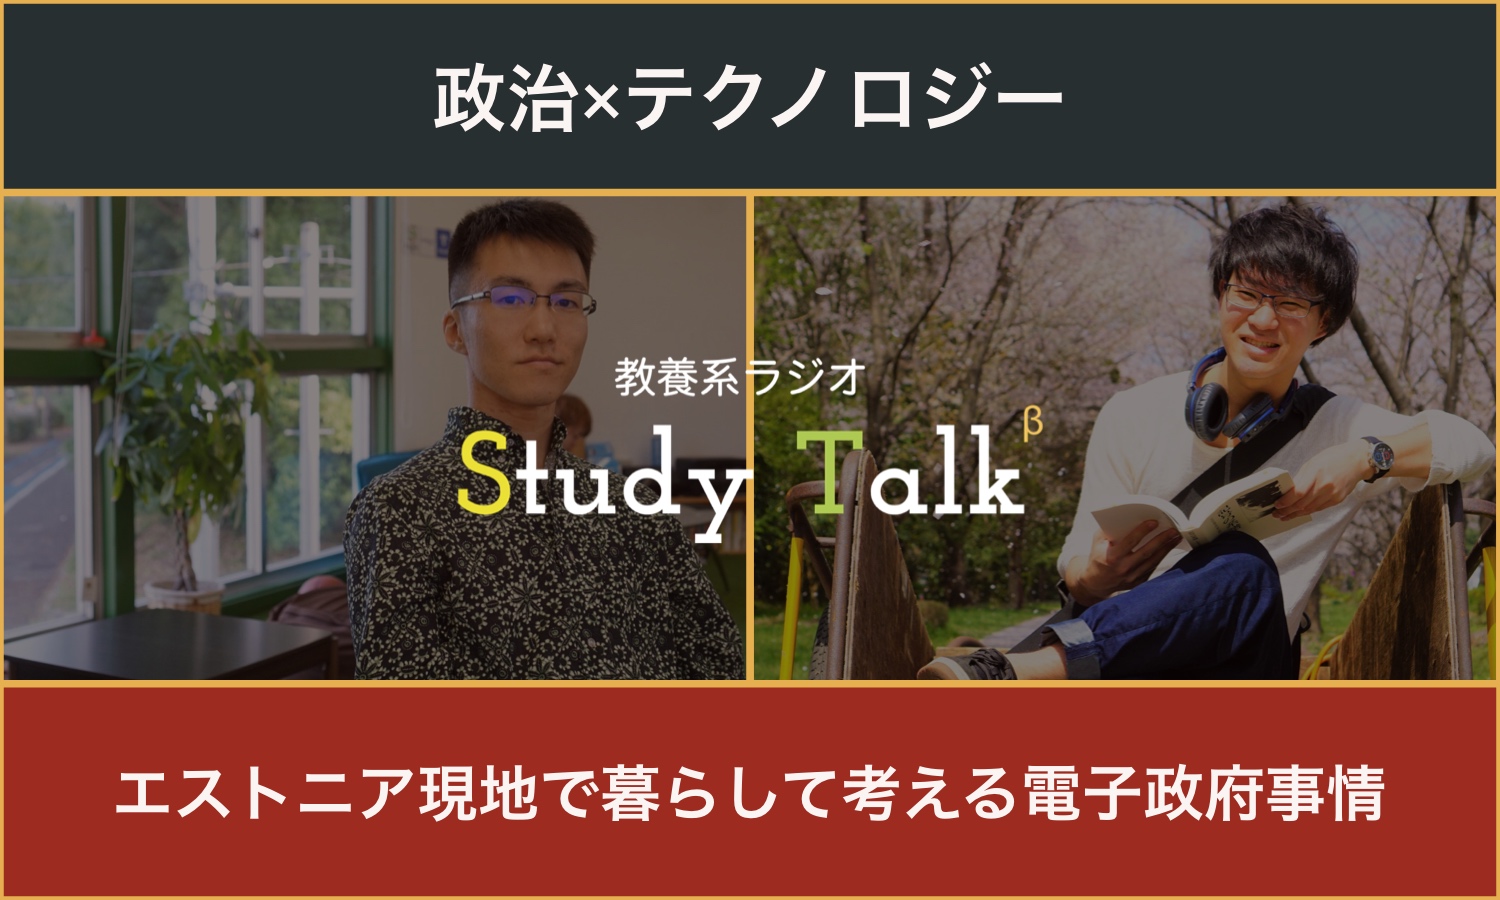 【政治×テクノロジー】Study Talk vol.4──議論の深化を目指した「Study Talk」